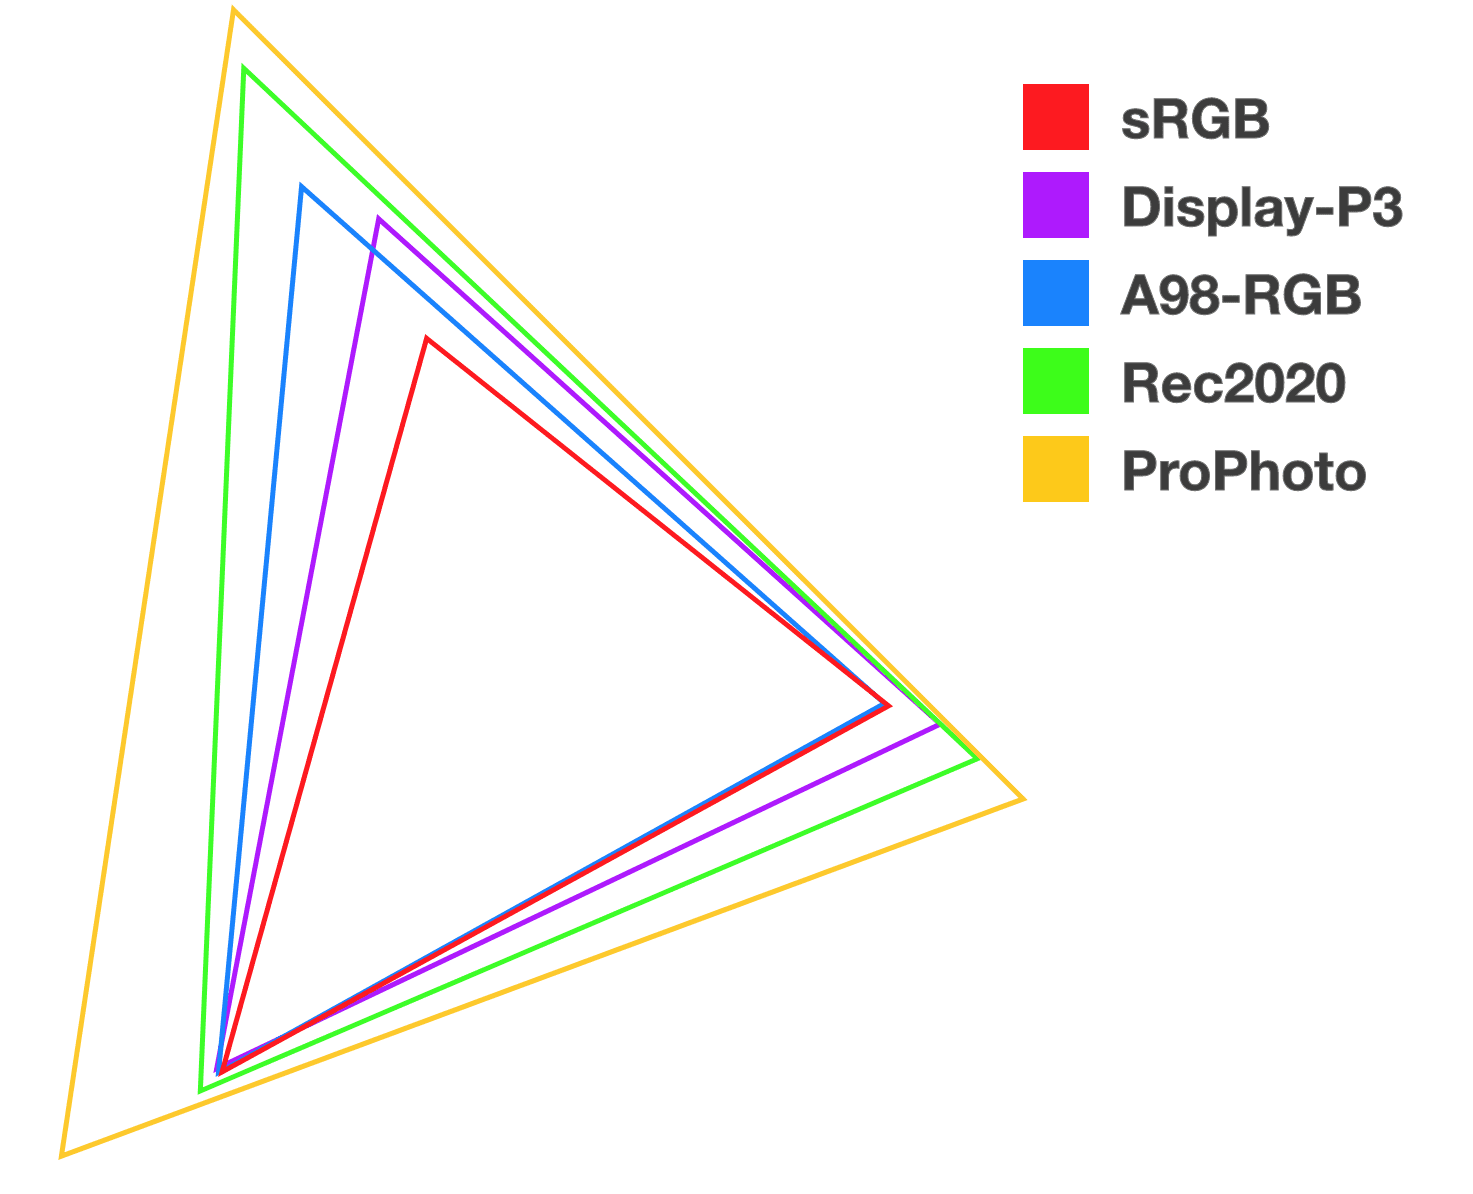 包含五個不同顏色的堆疊三角形，用於說明每個新色域之間的關係和大小。